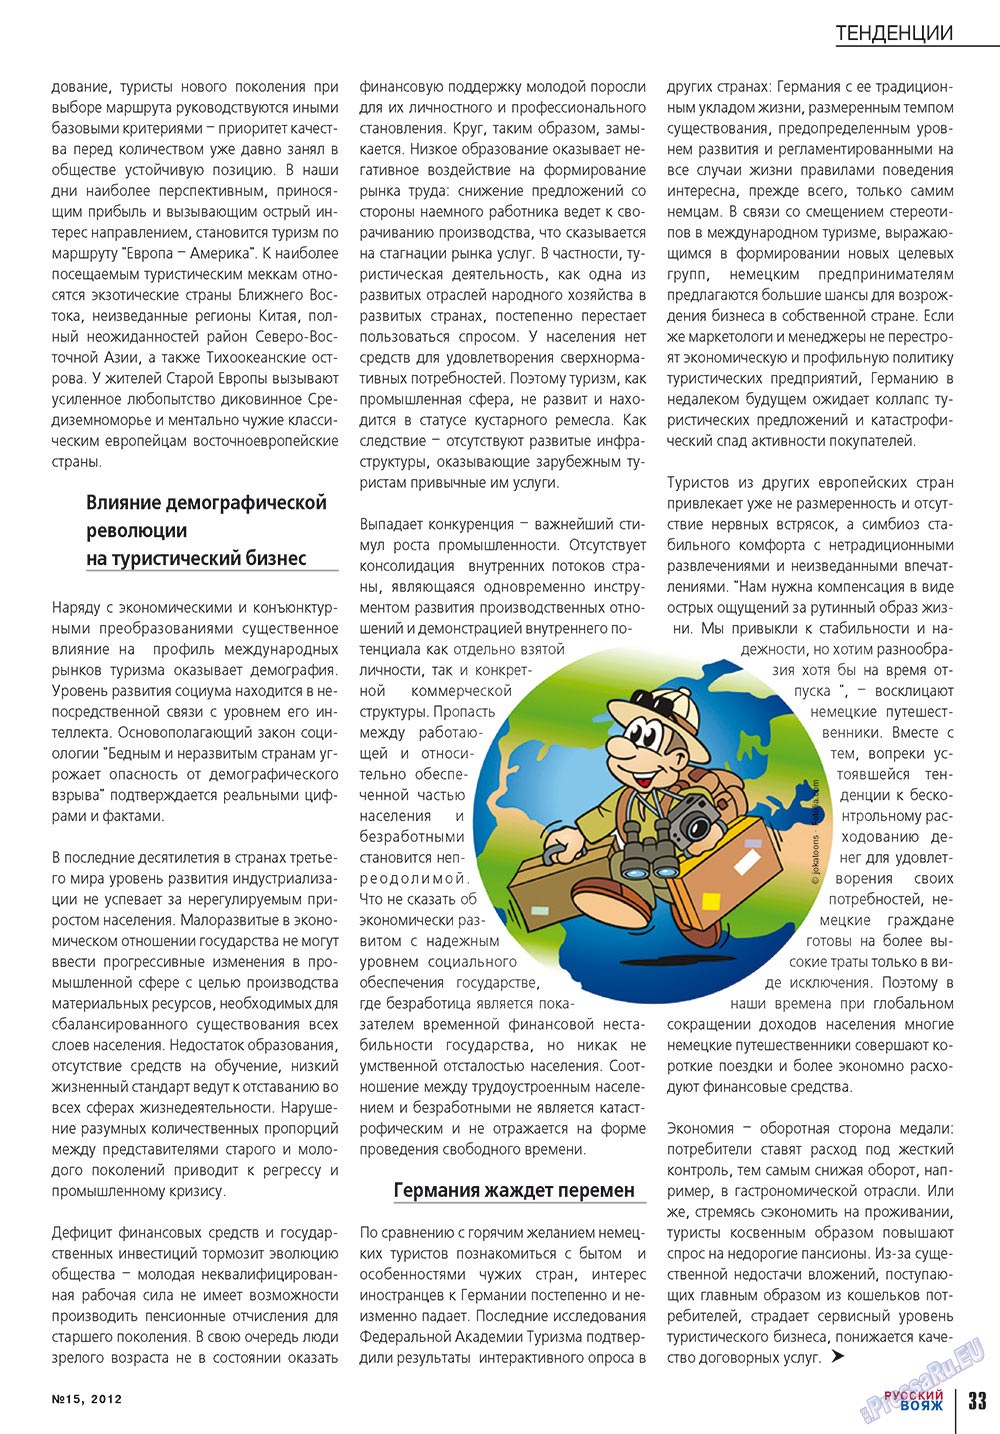 Русский вояж (журнал). 2012 год, номер 15, стр. 33